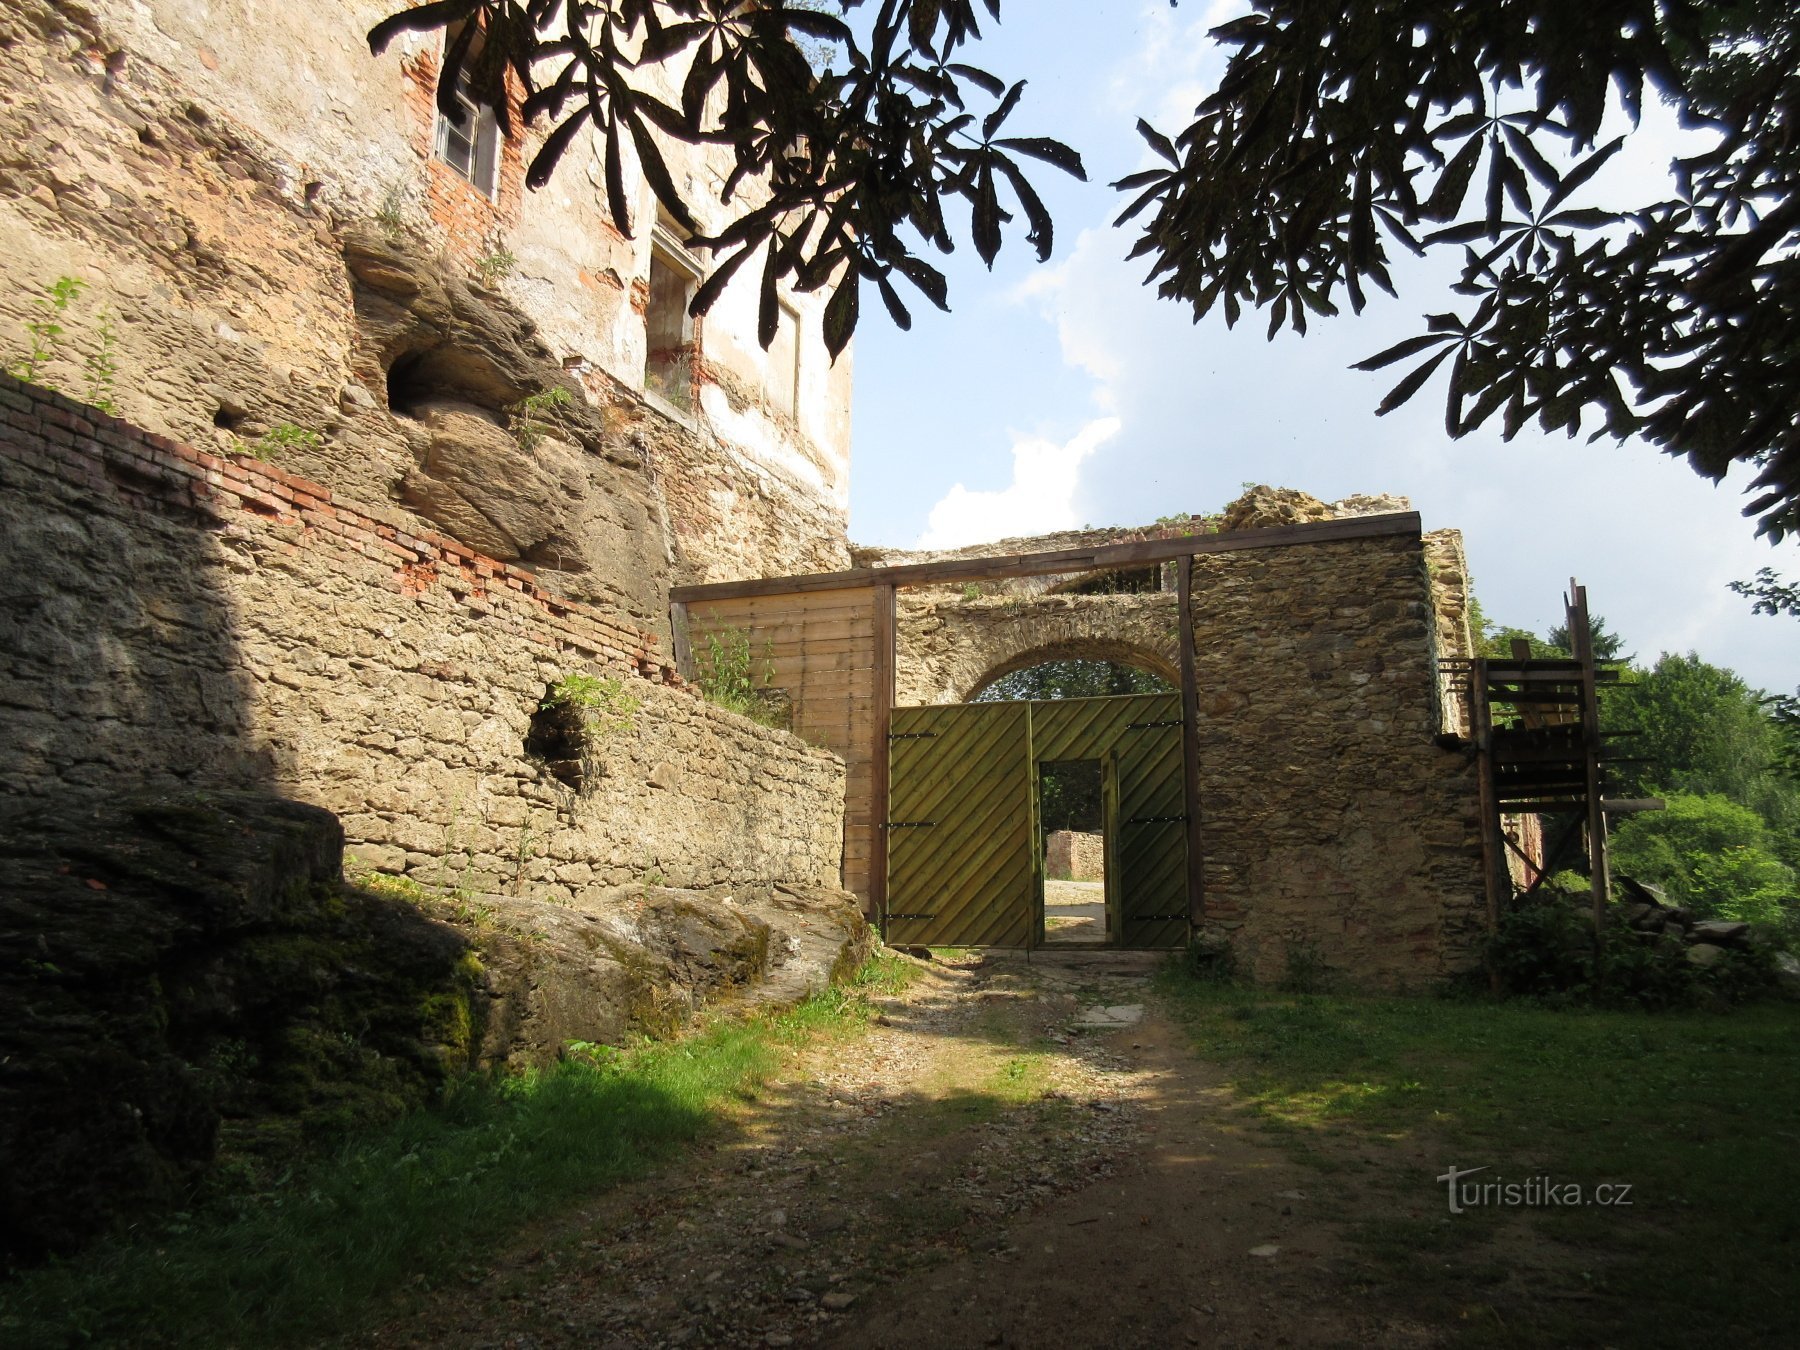 Josefov - Hřebeny, as ruínas do Castelo de Hartenberg